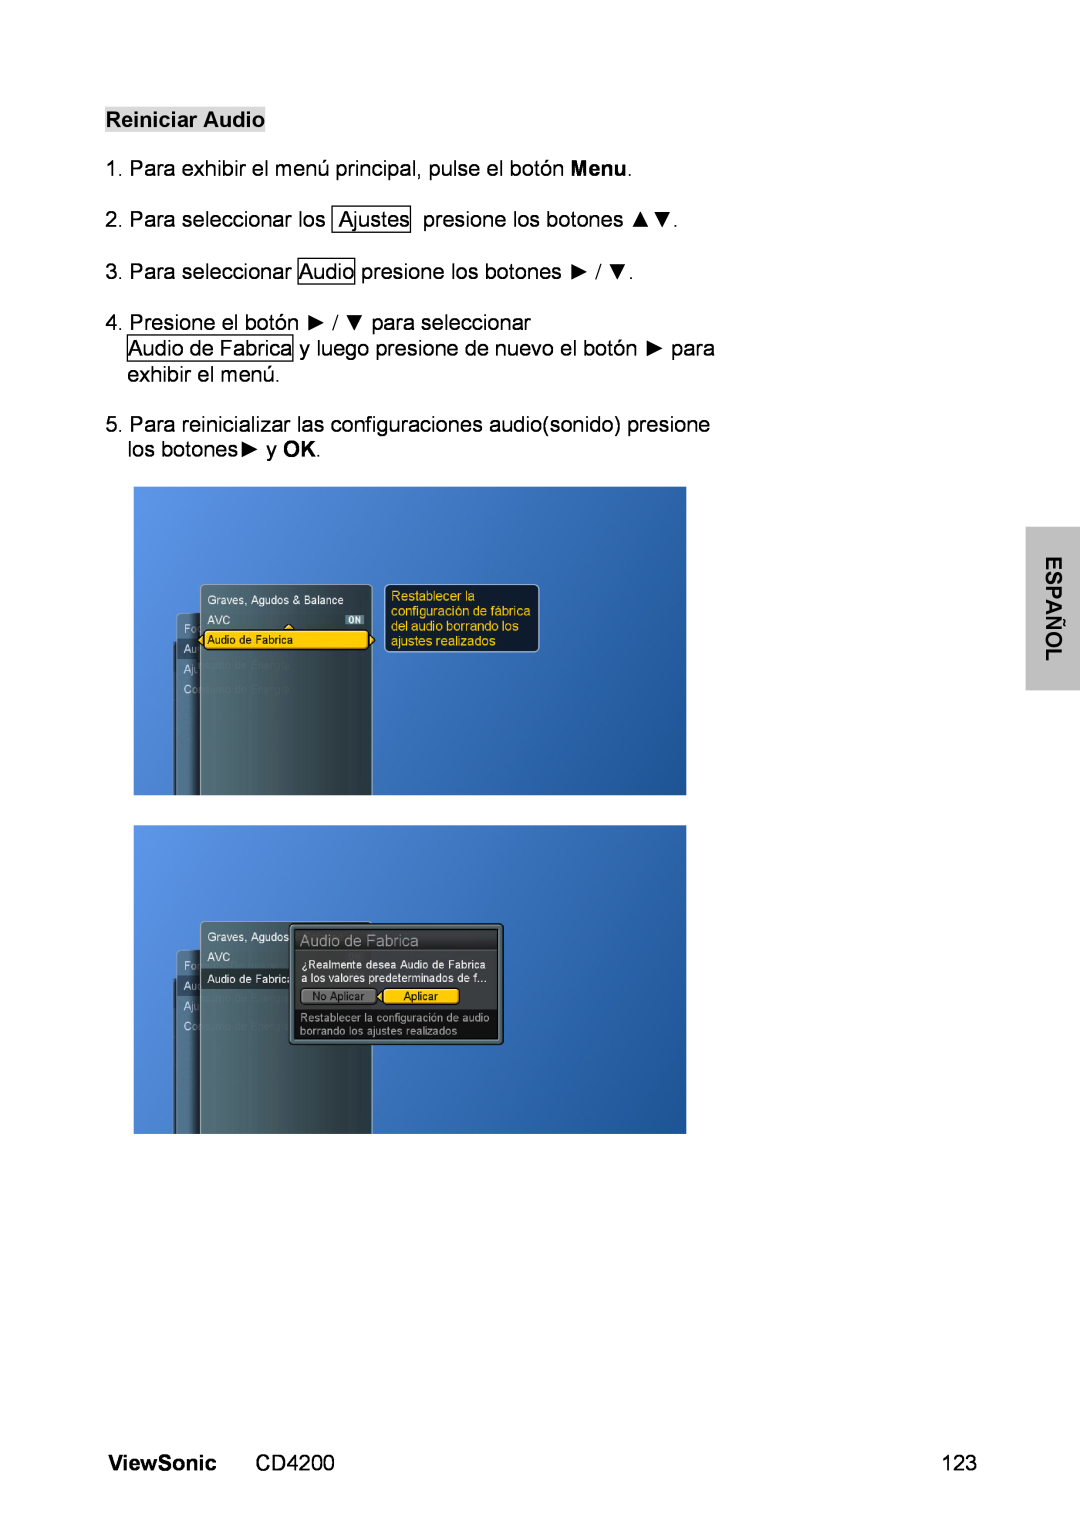 ViewSonic manual Reiniciar Audio, Para exhibir el menú principal, pulse el botón Menu, Español, ViewSonic CD4200 